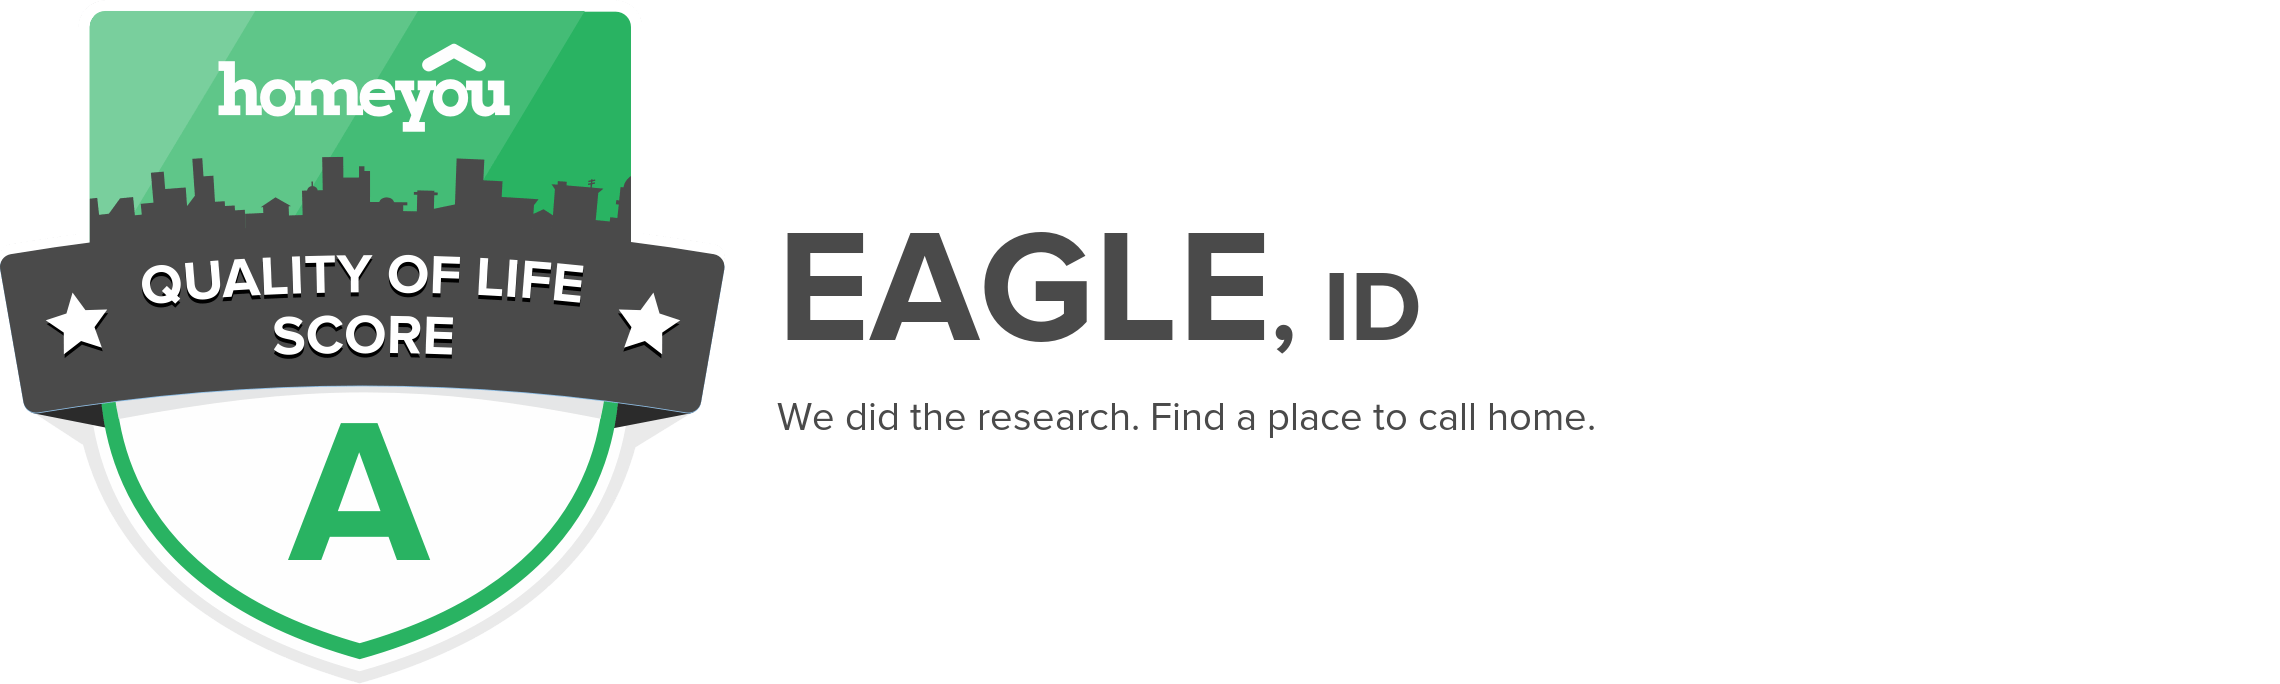 Eagle, ID